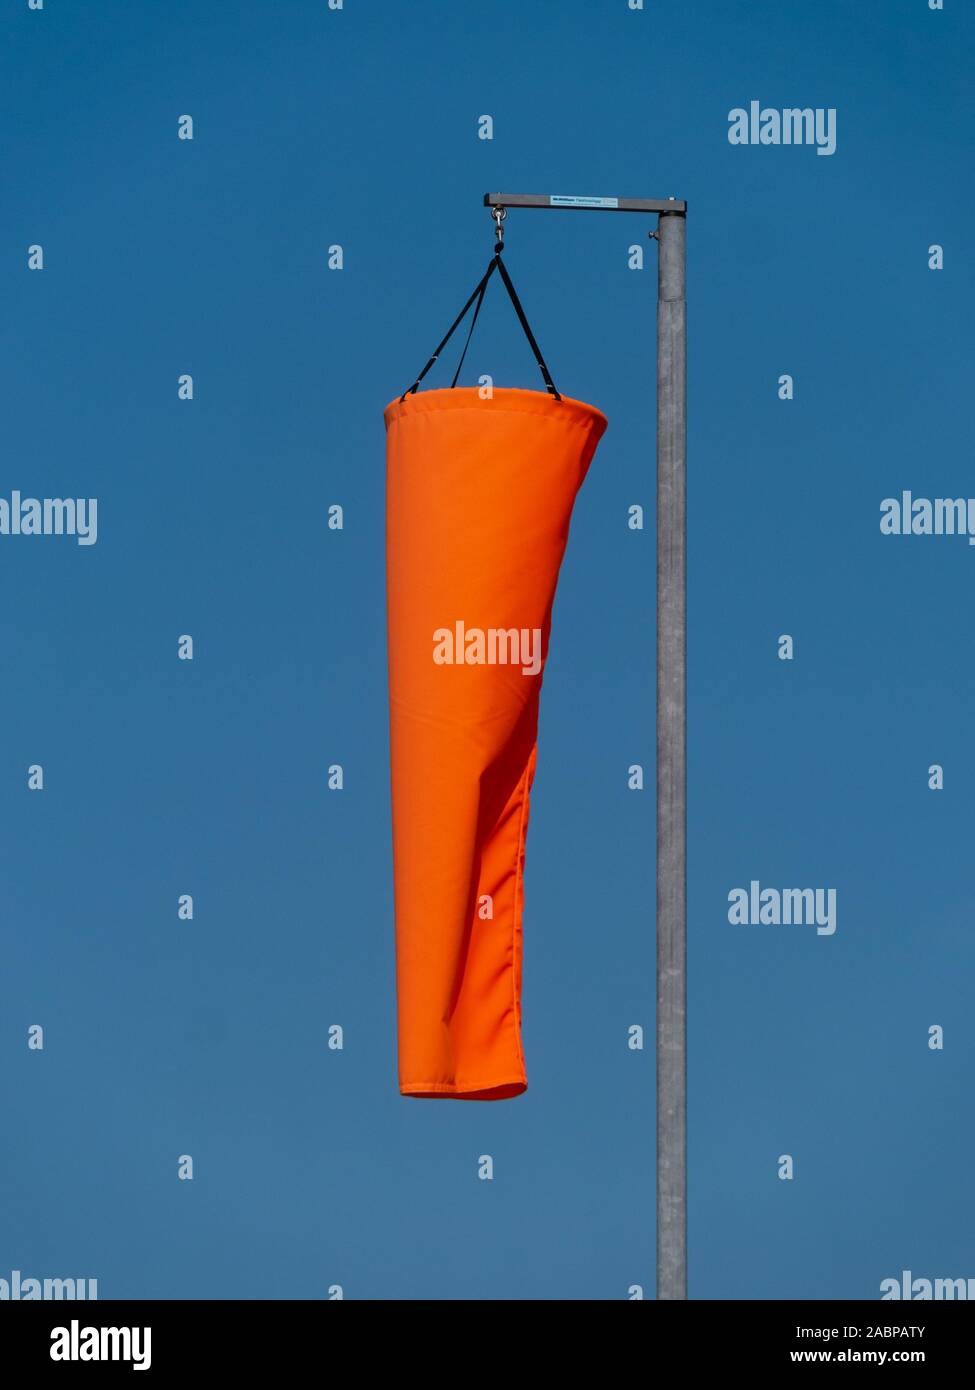 Neuen hellen orange Windsack herunterhängt, in Ruhe, immer noch kein Wind und Wetter mit blauem Himmel hinter sich. Stockfoto